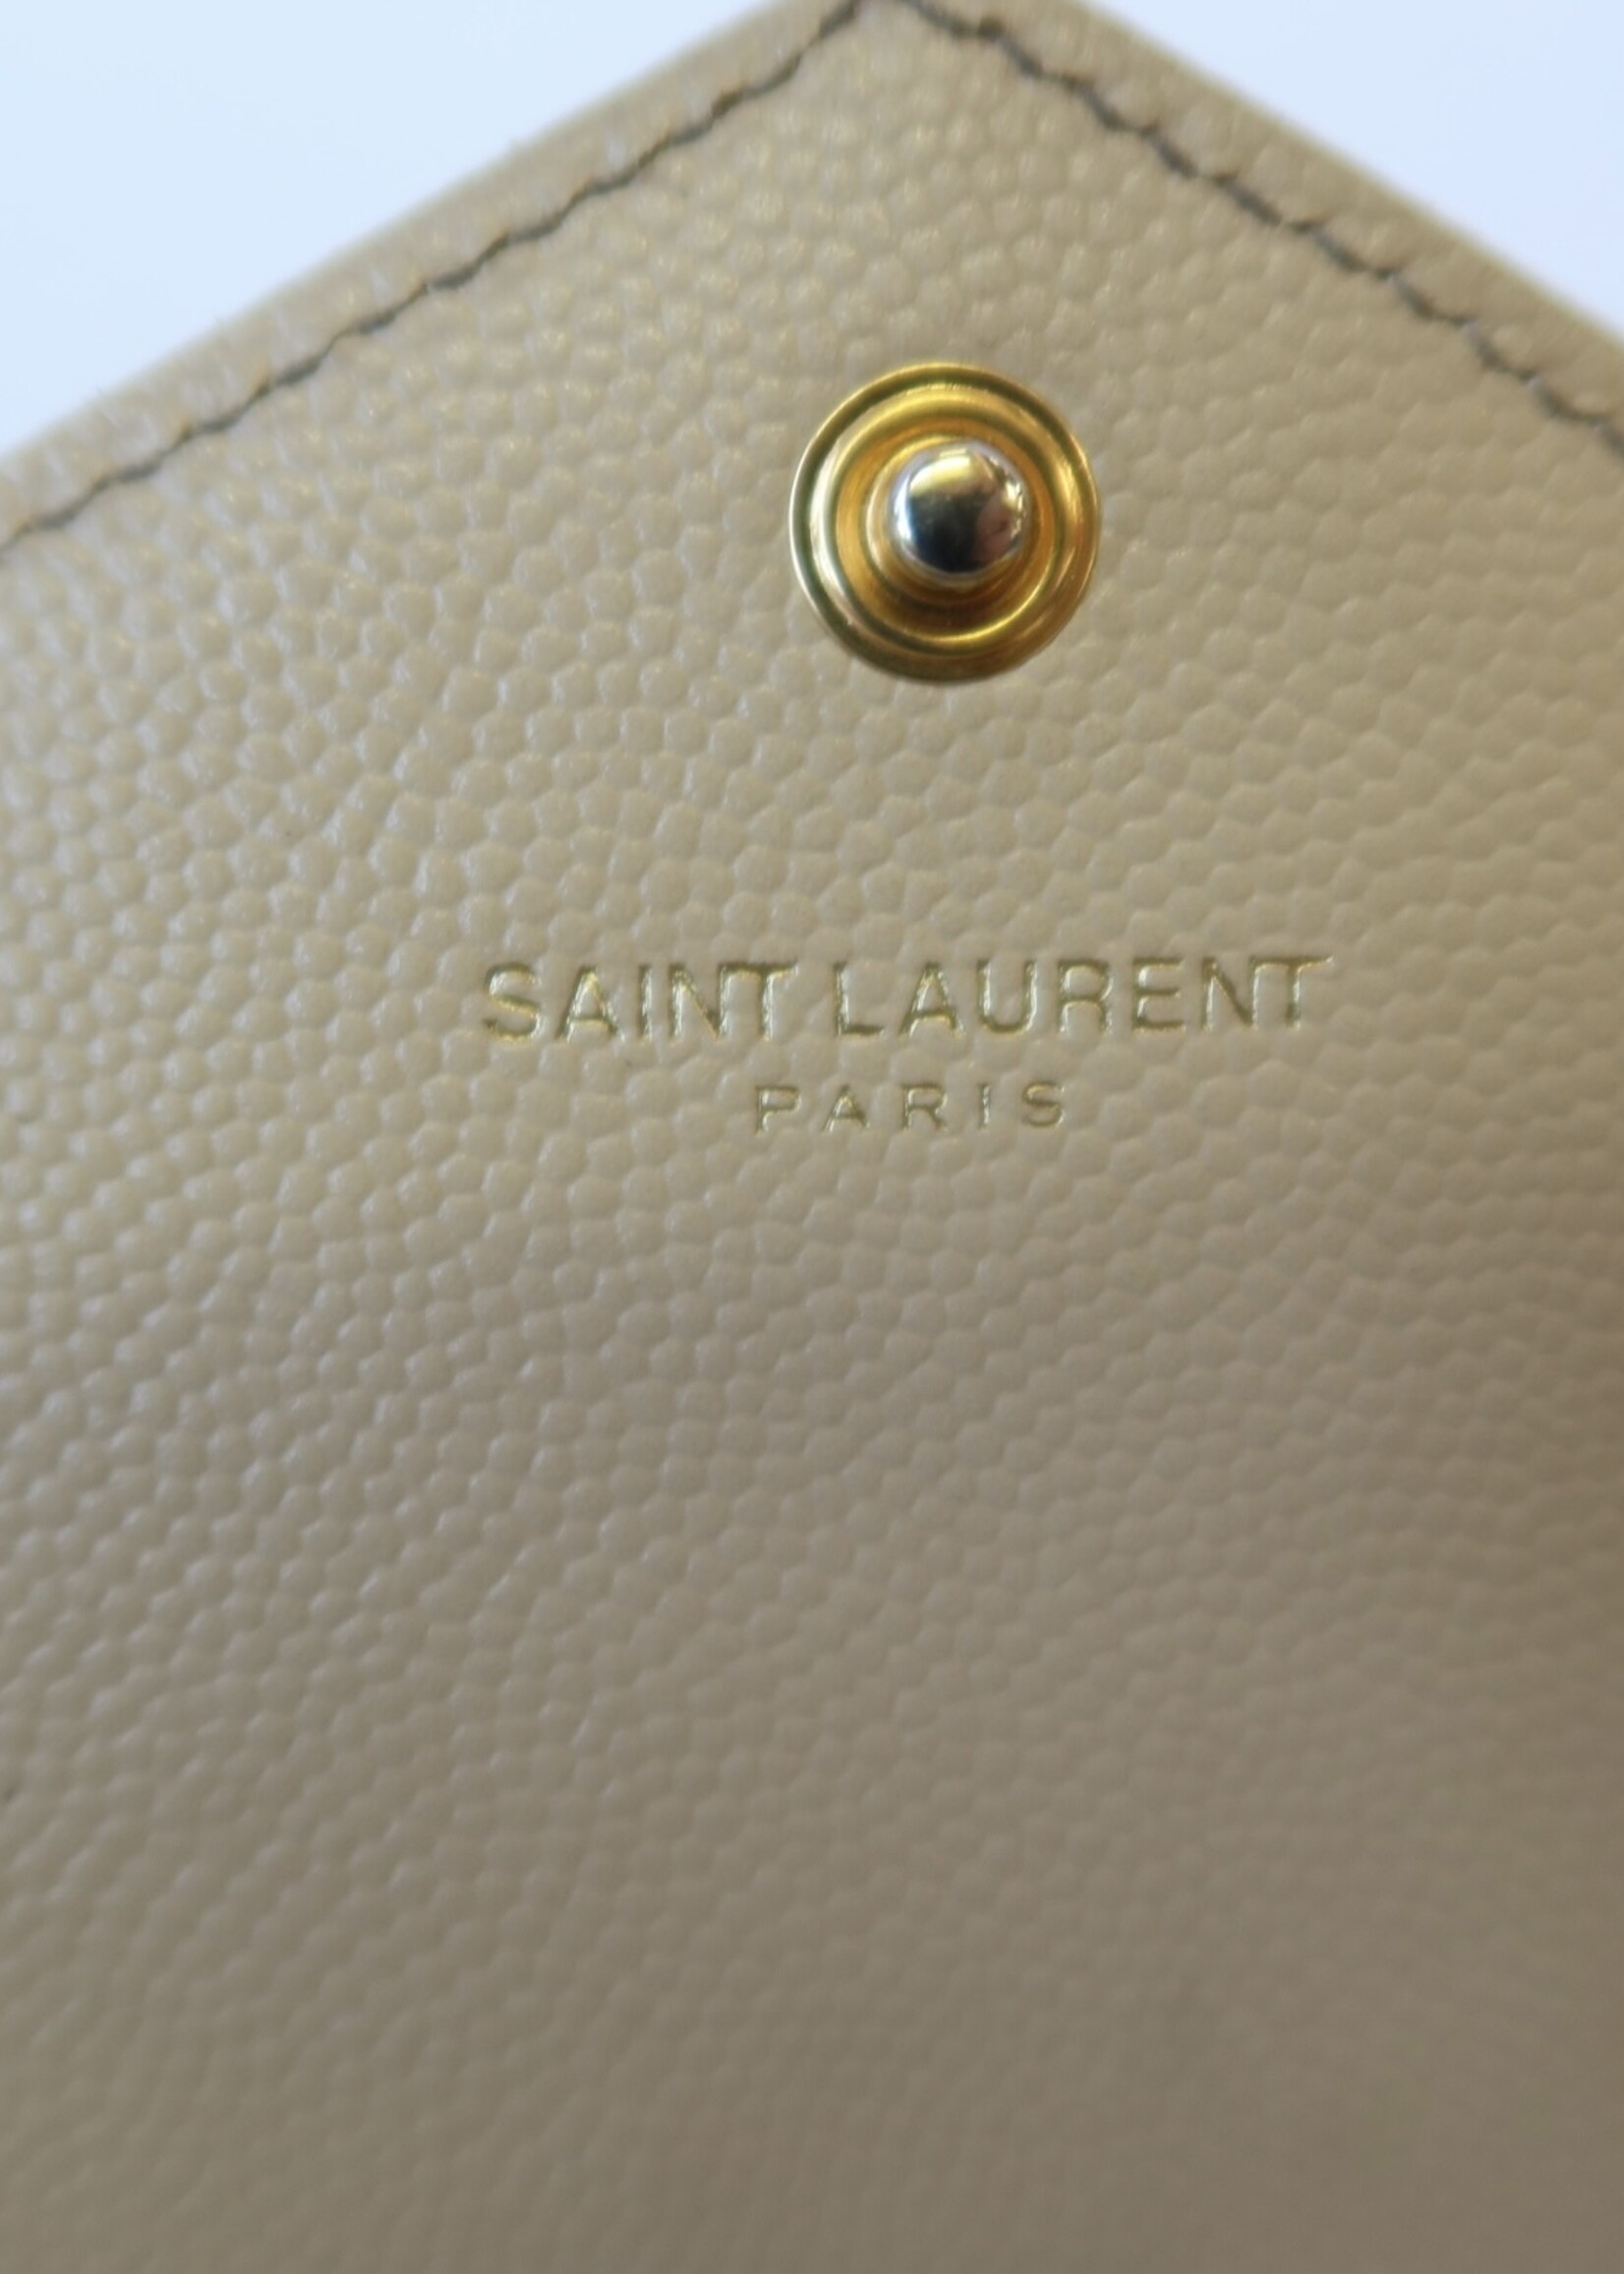 YSL Tan Cassandre Chain Wallet in Grain de Poudre Leather